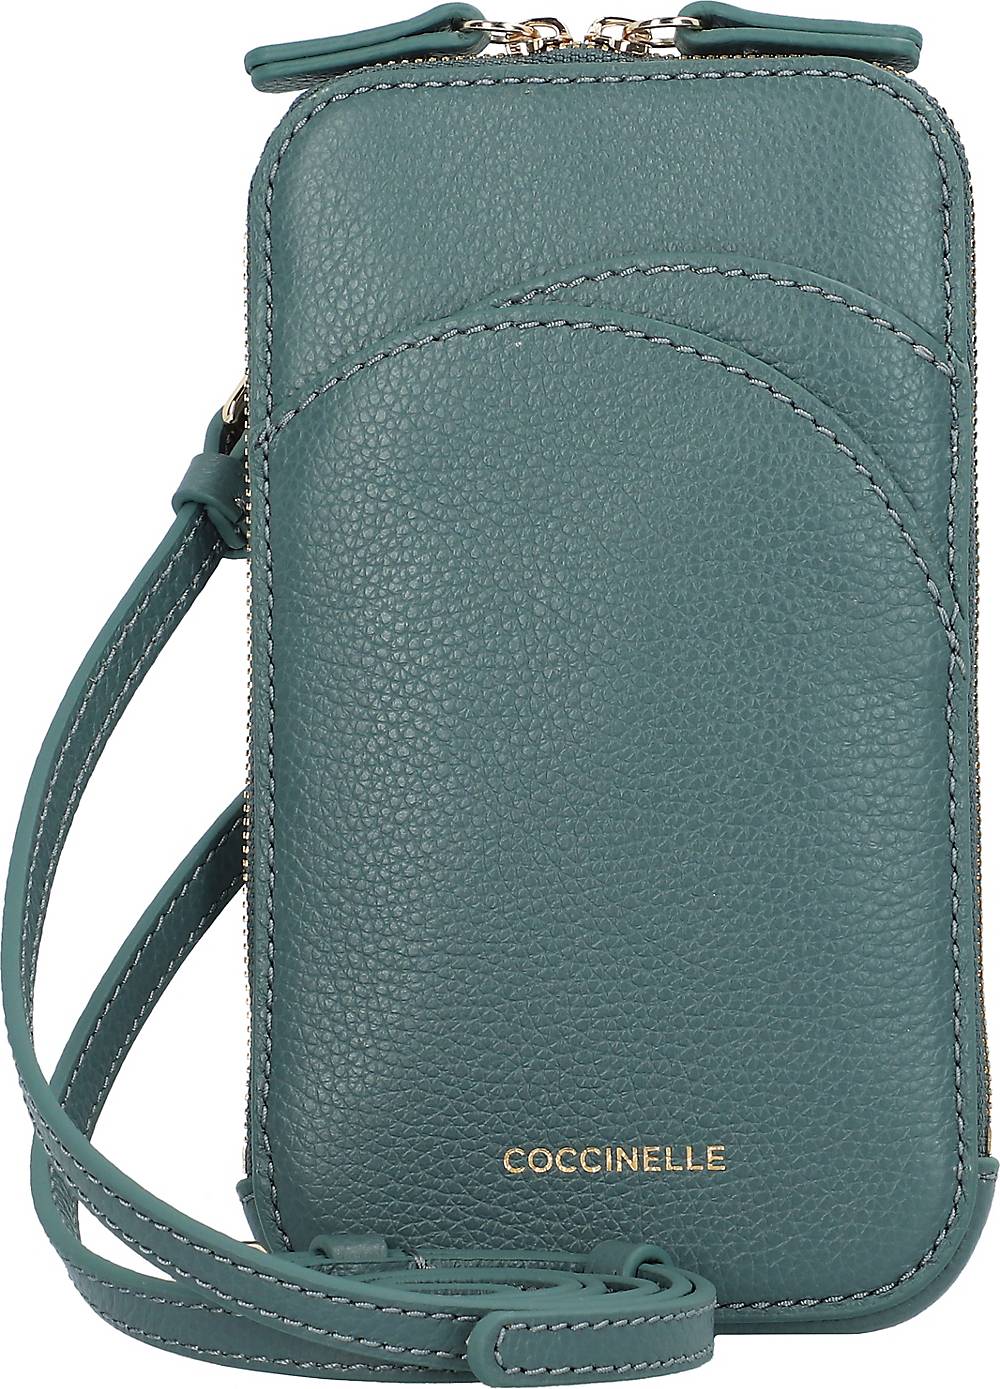 Coccinelle, Arc Handytasche Leder 10 Cm in mittelgrün, Handyhüllen & Zubehör für Damen